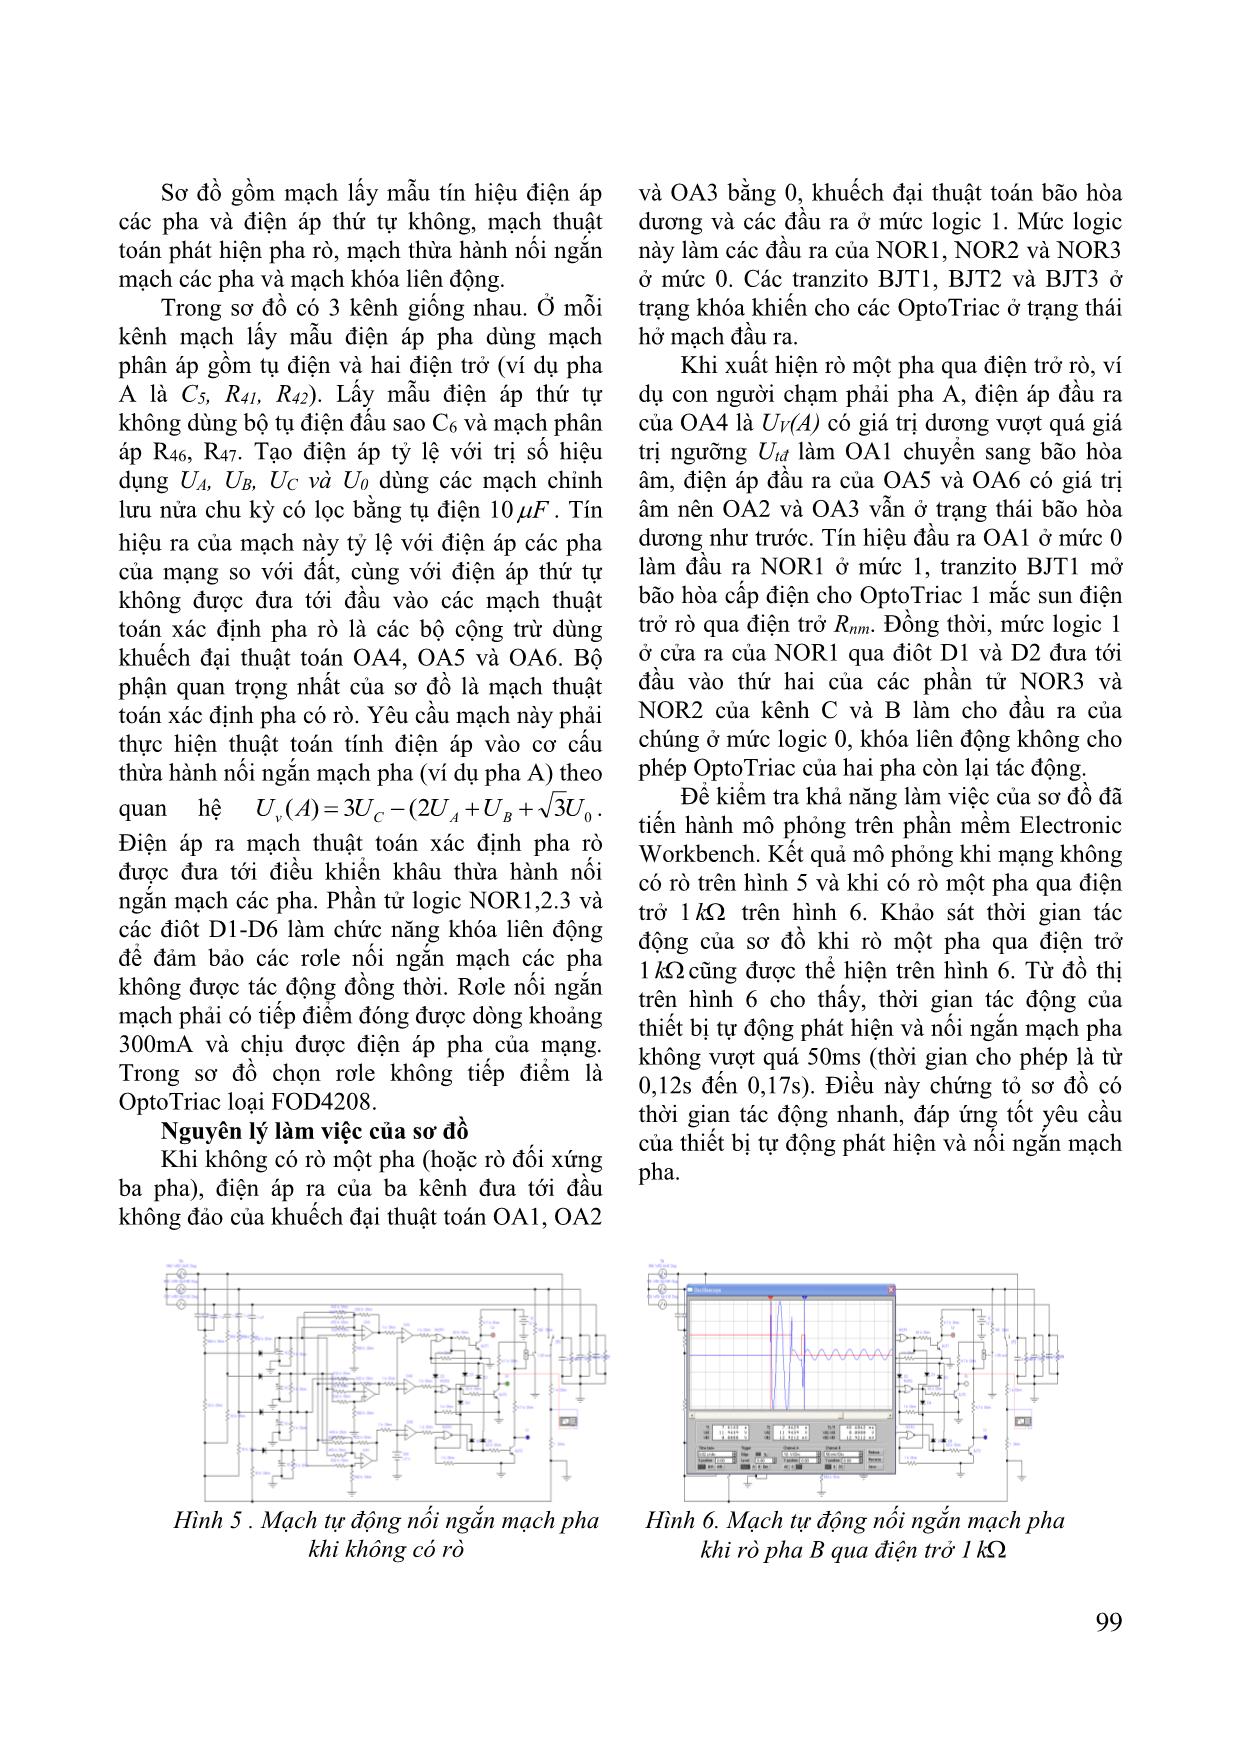 Mạch tự động phát hiện và nối ngắn mạch pha rò dùng cho mạng điện mỏ hầm lò điện áp 1140V trang 4